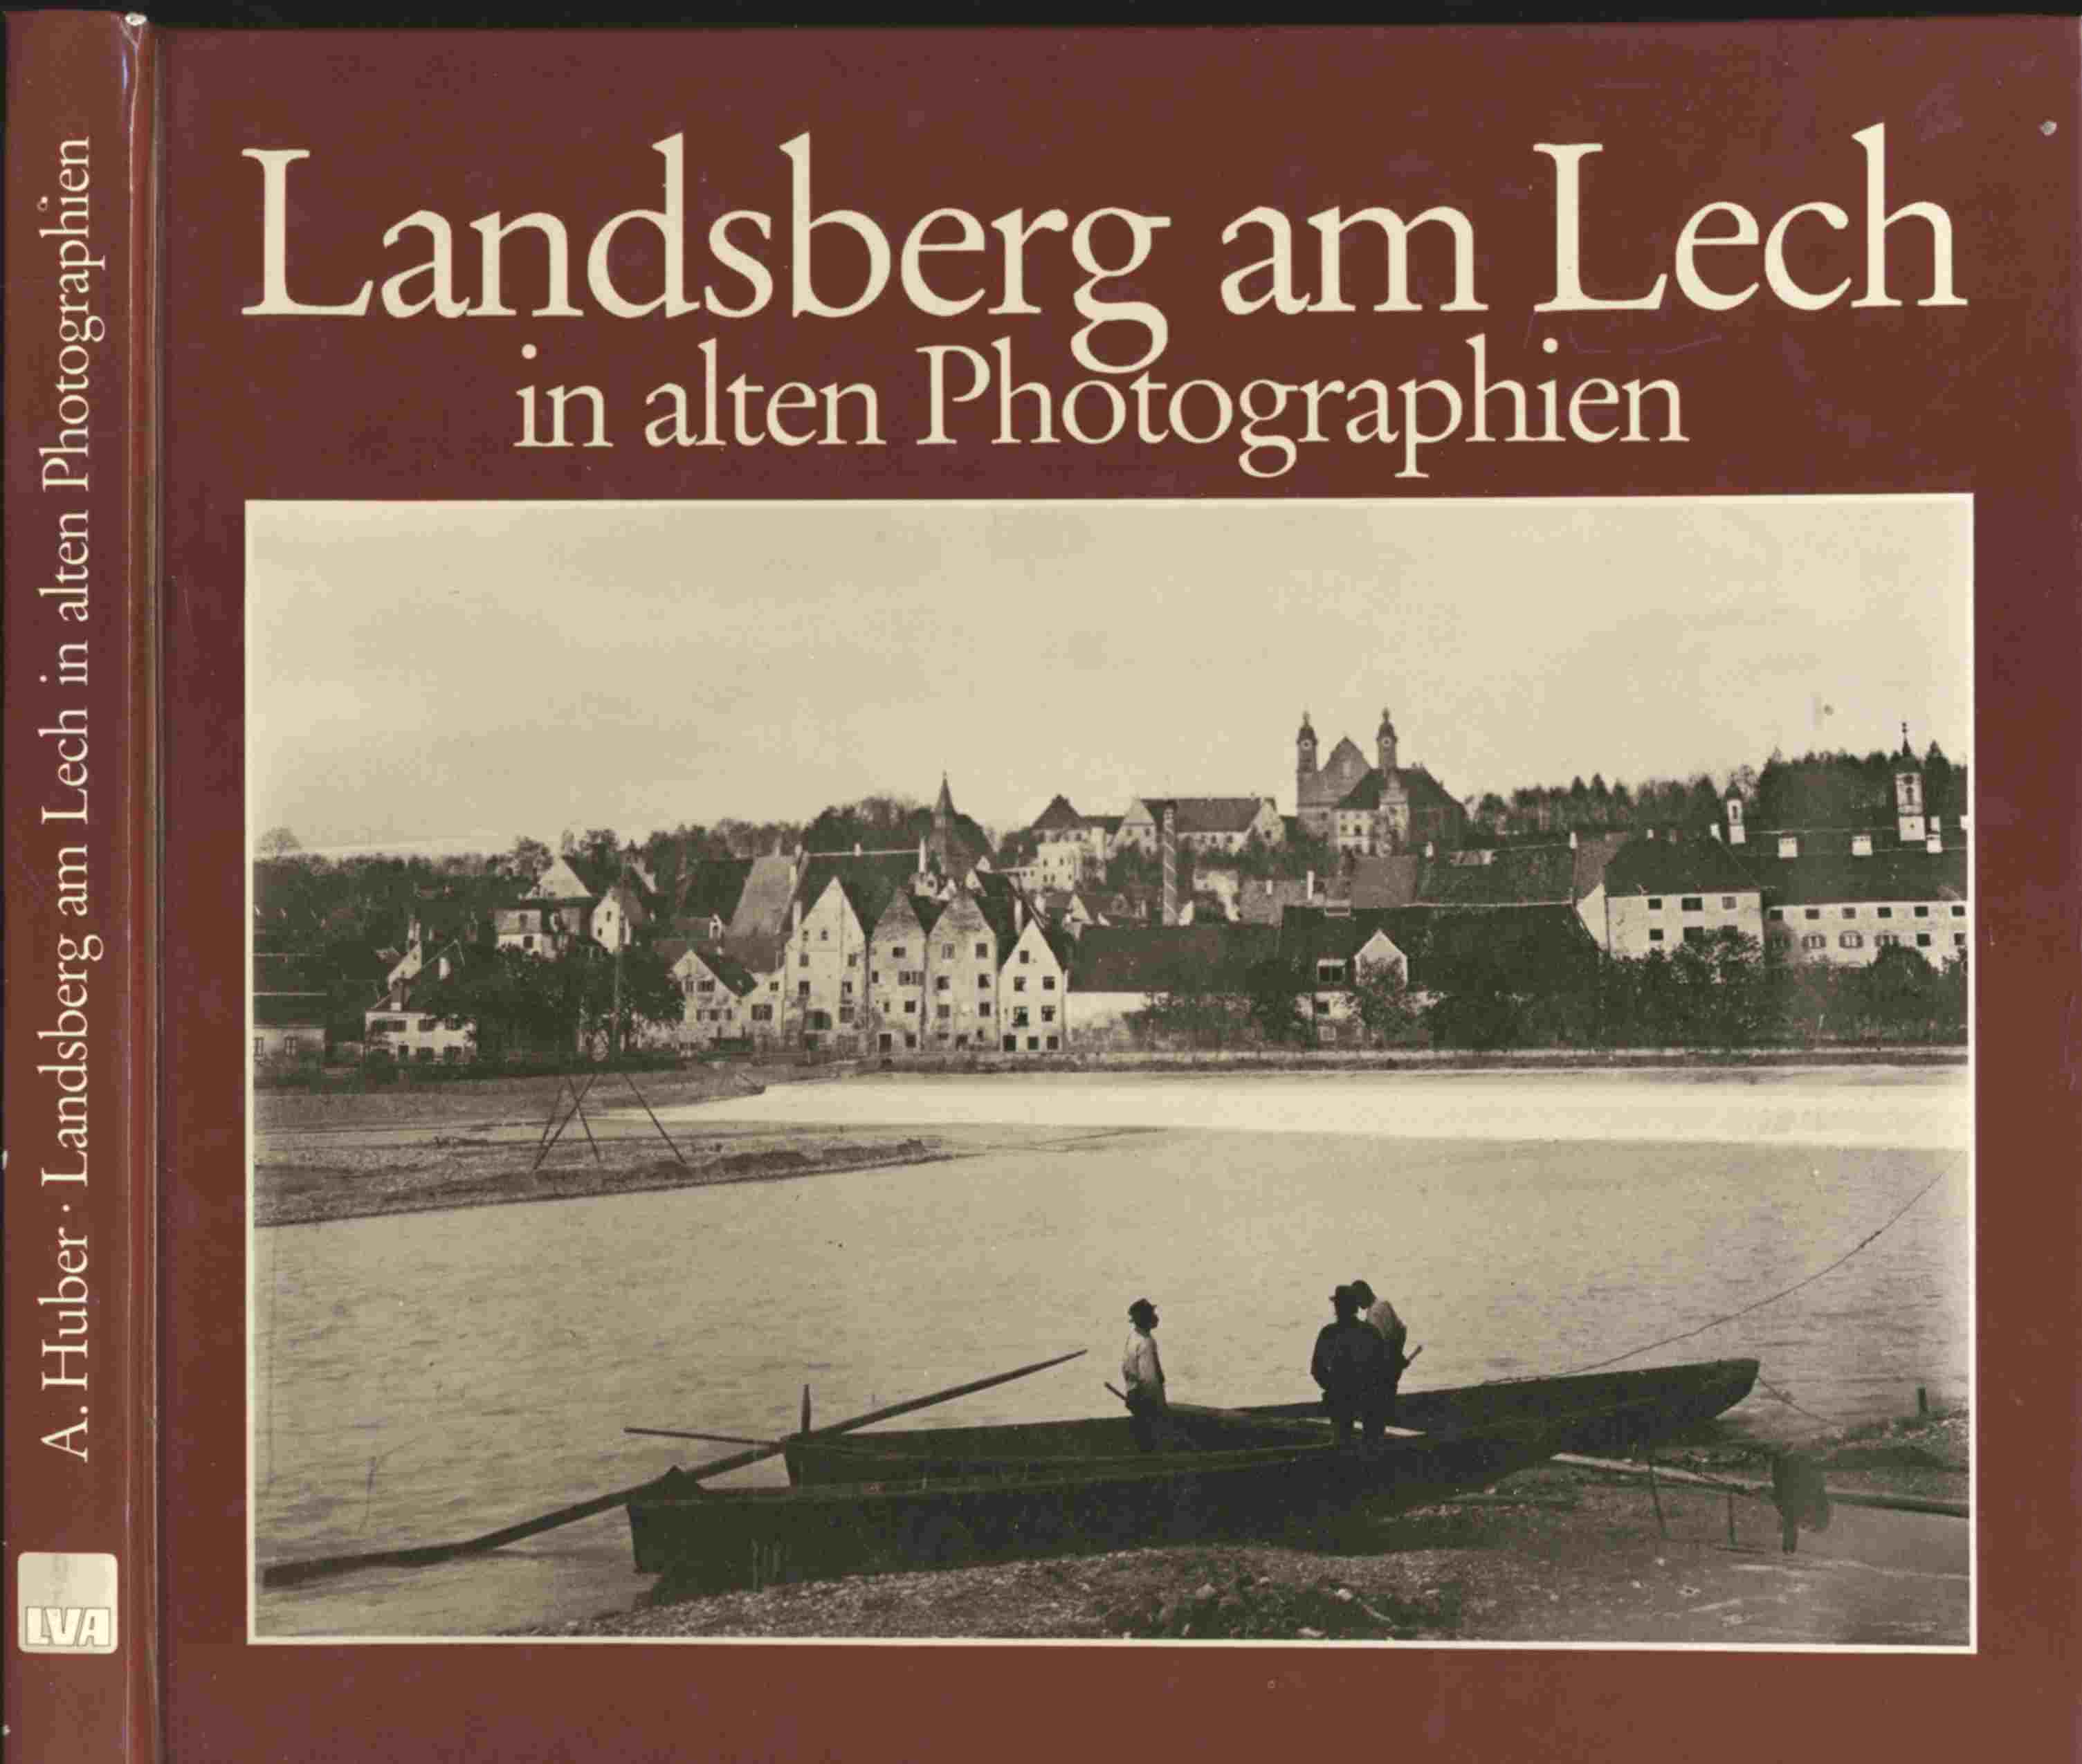 HUBER, Anton (Hrg.)  Landsberg am Lech in alten Photographien. Ein Bildband mit alten Photographien der Stadt Landsberg am Lech. 